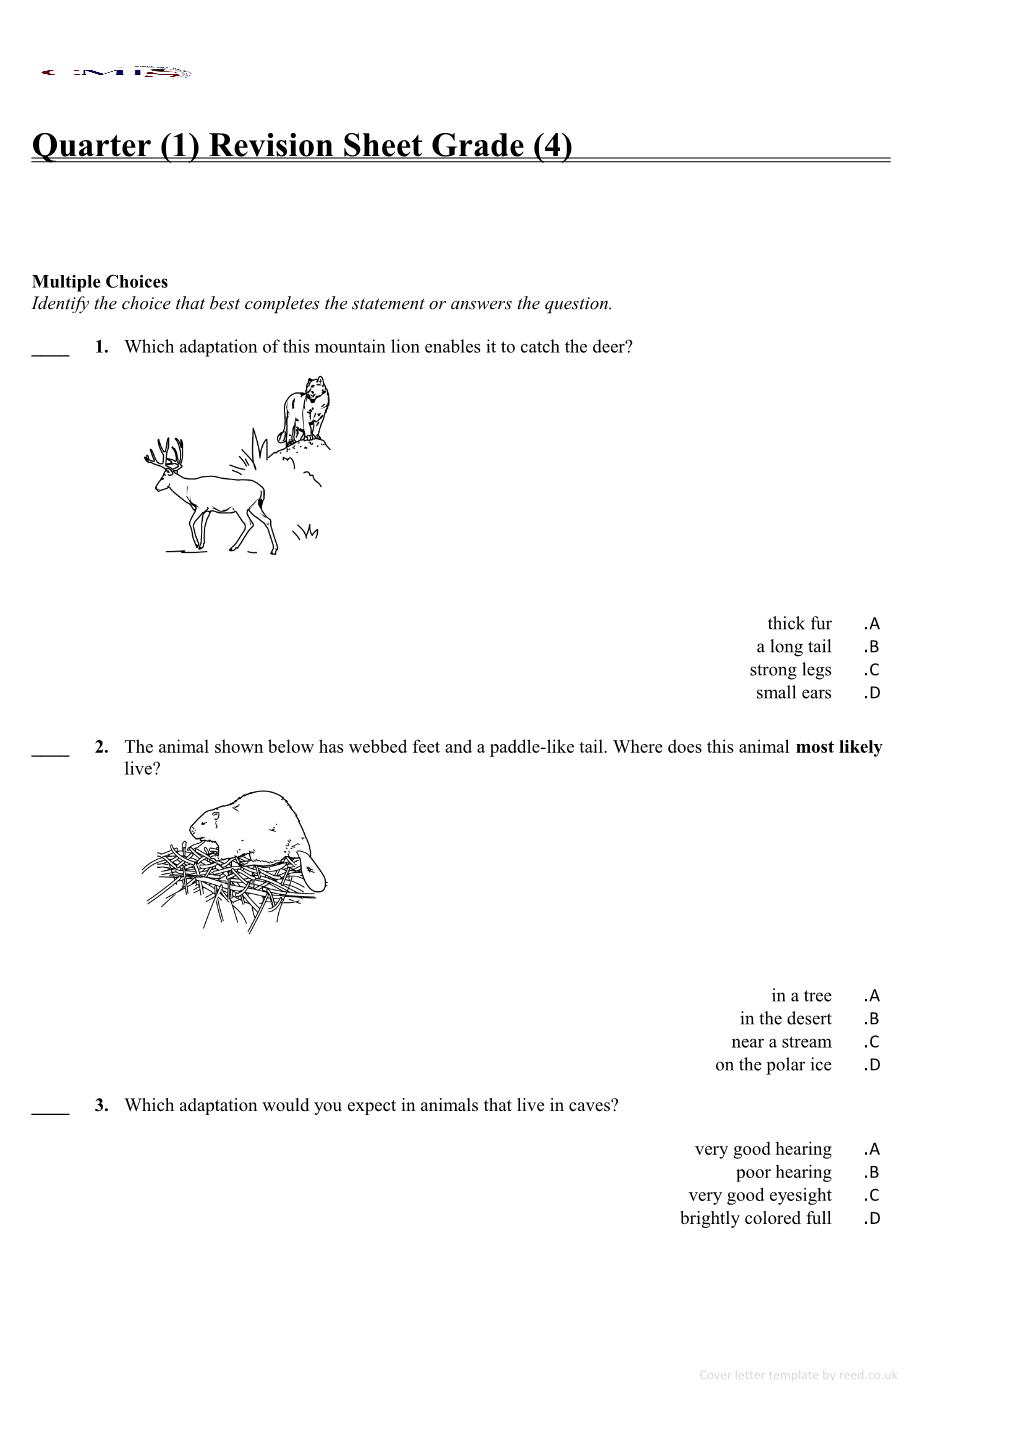 Quarter (1) Revision Sheet Grade (4)